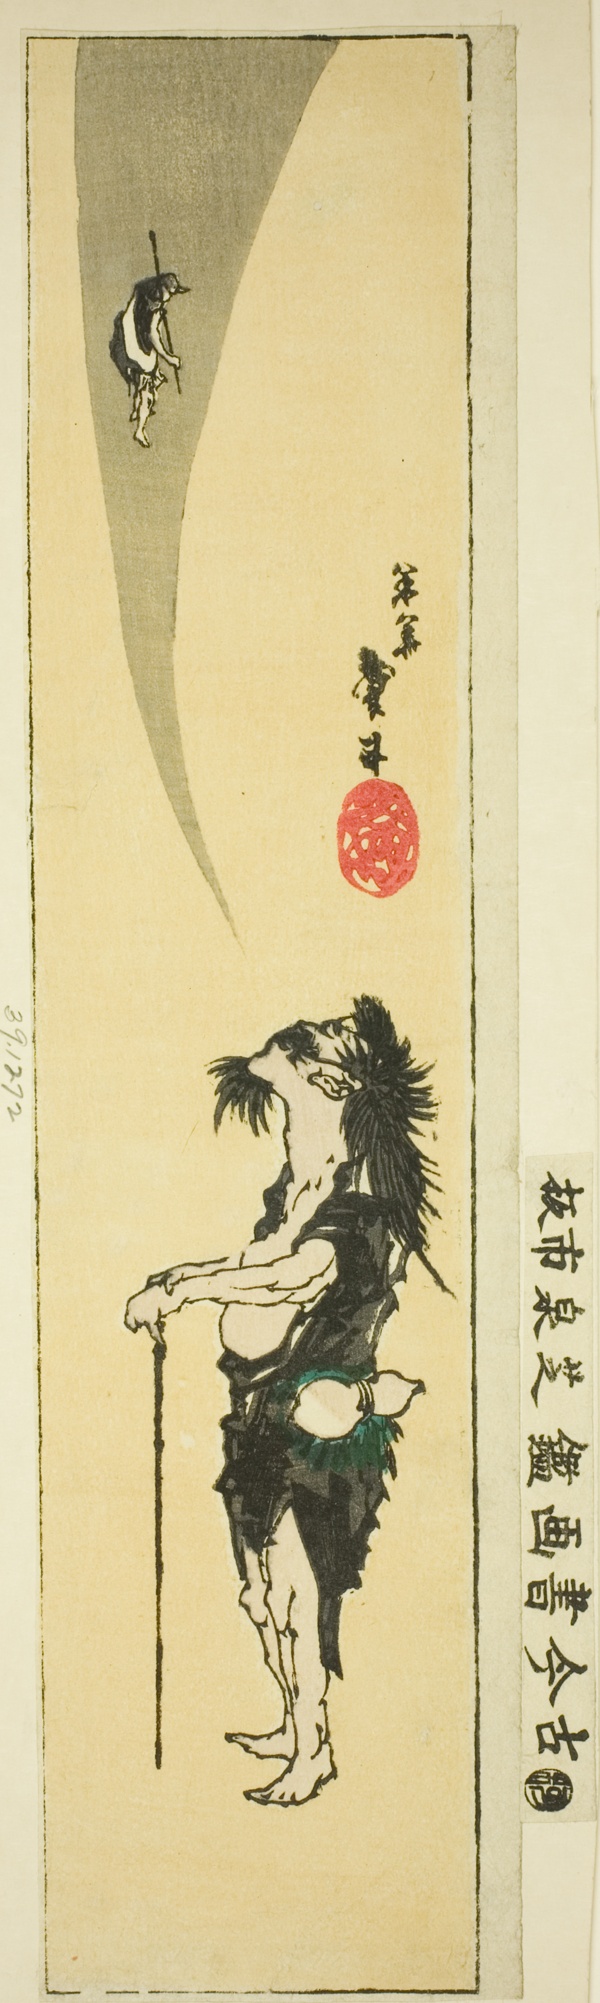 Daoist immortal Li Tieguai (Japanese: Tekkai)